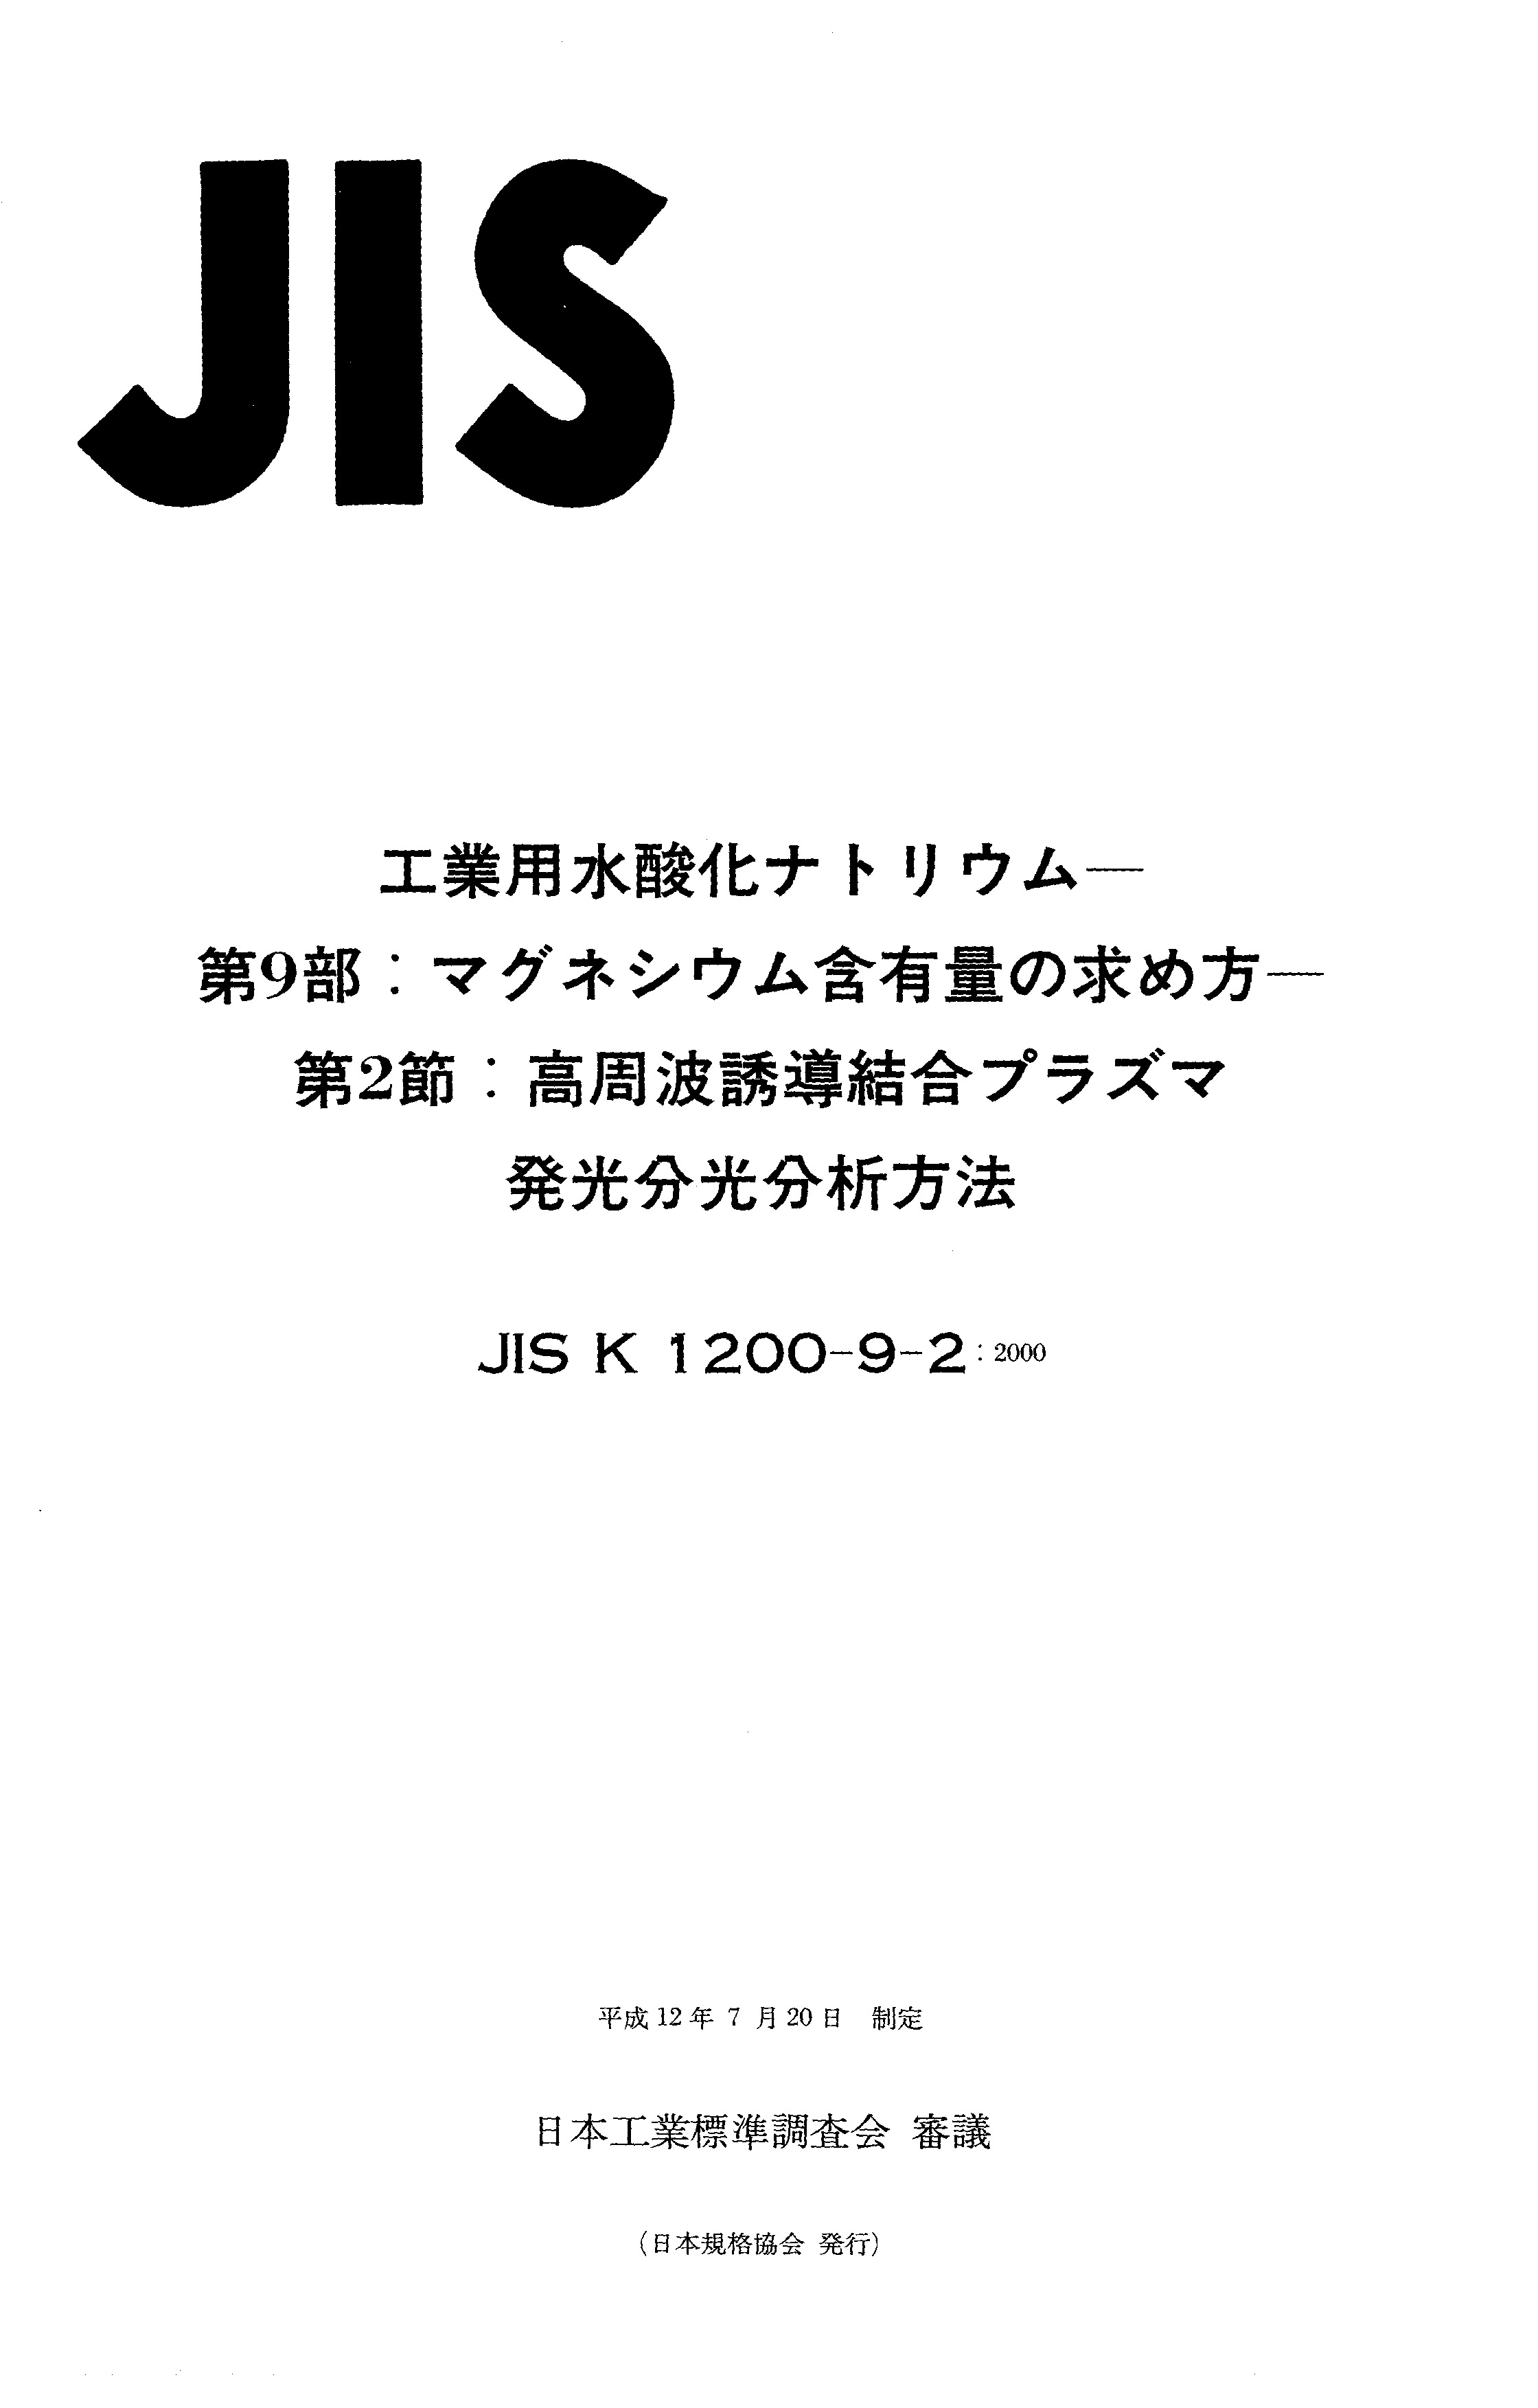 JIS K 1200-9-2:2000封面图